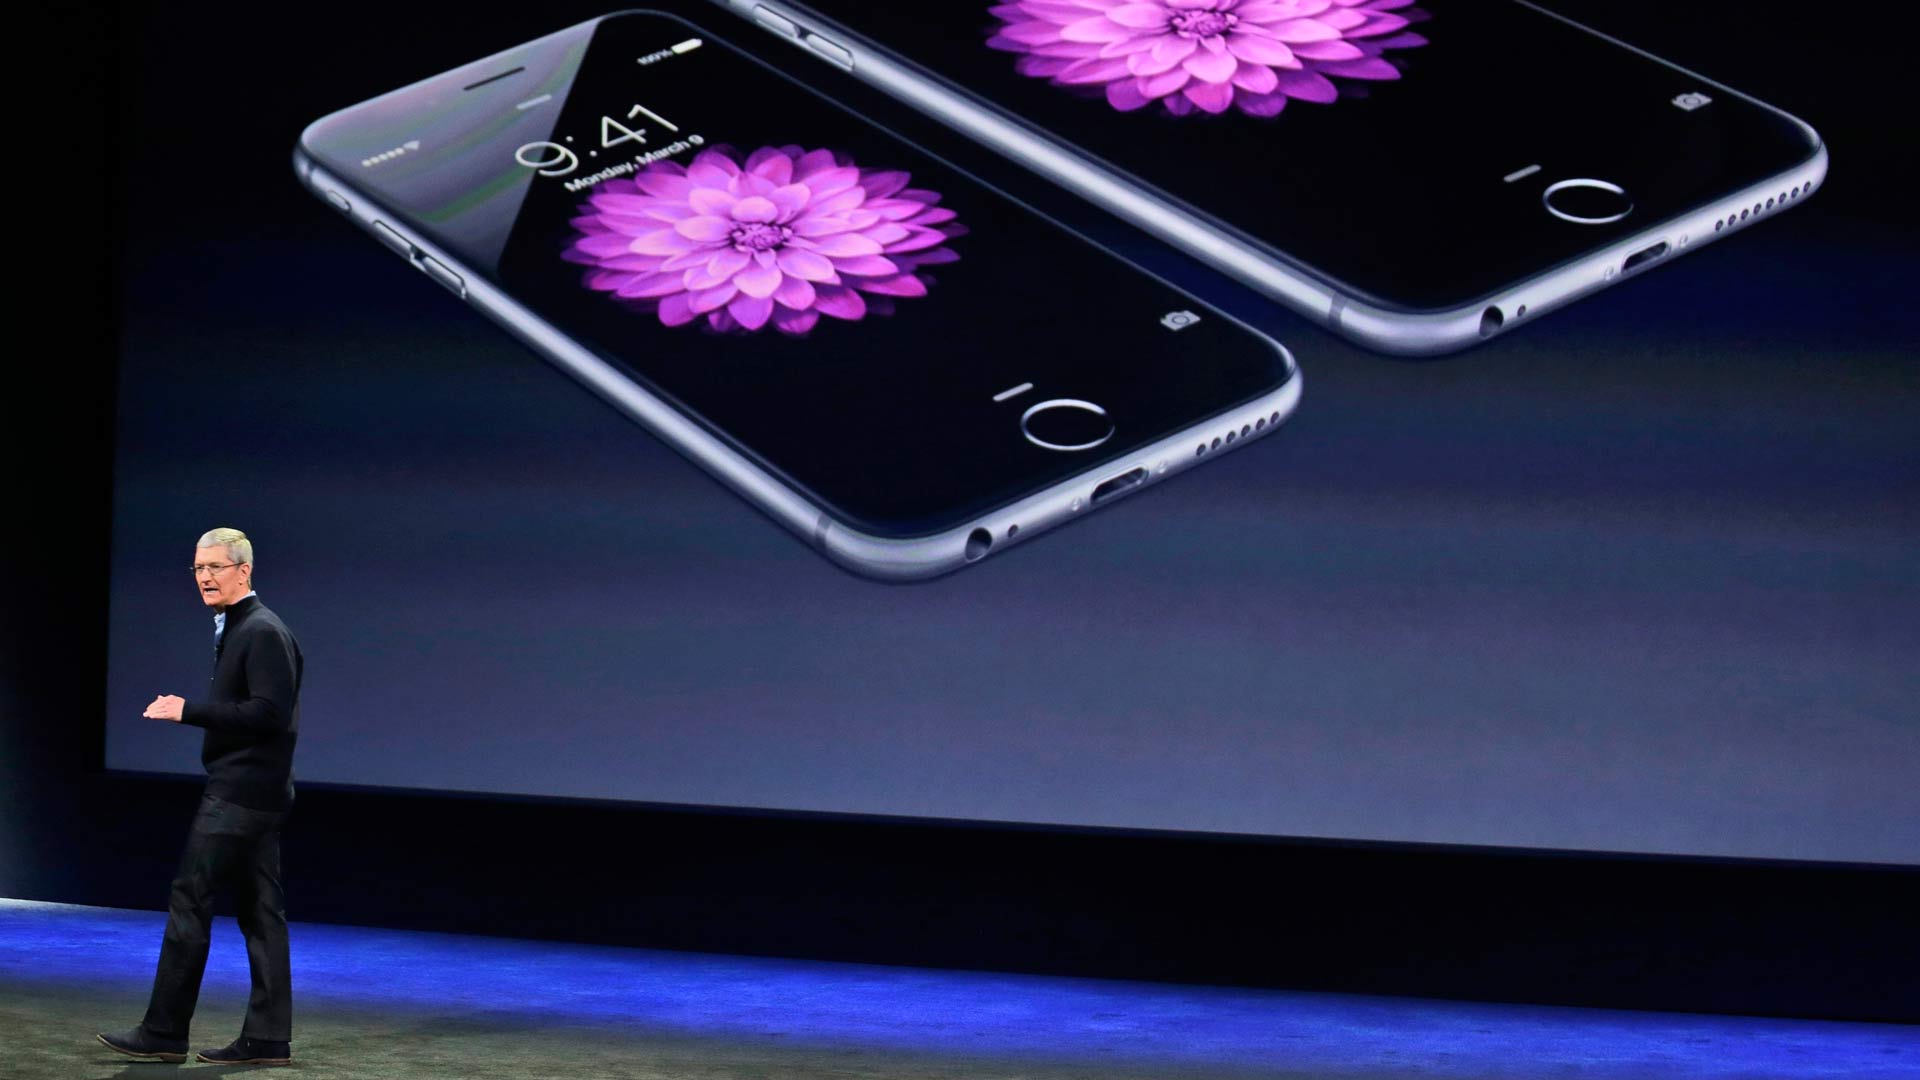 El iPhone 6, señalado como el teléfono más propenso a averiarse